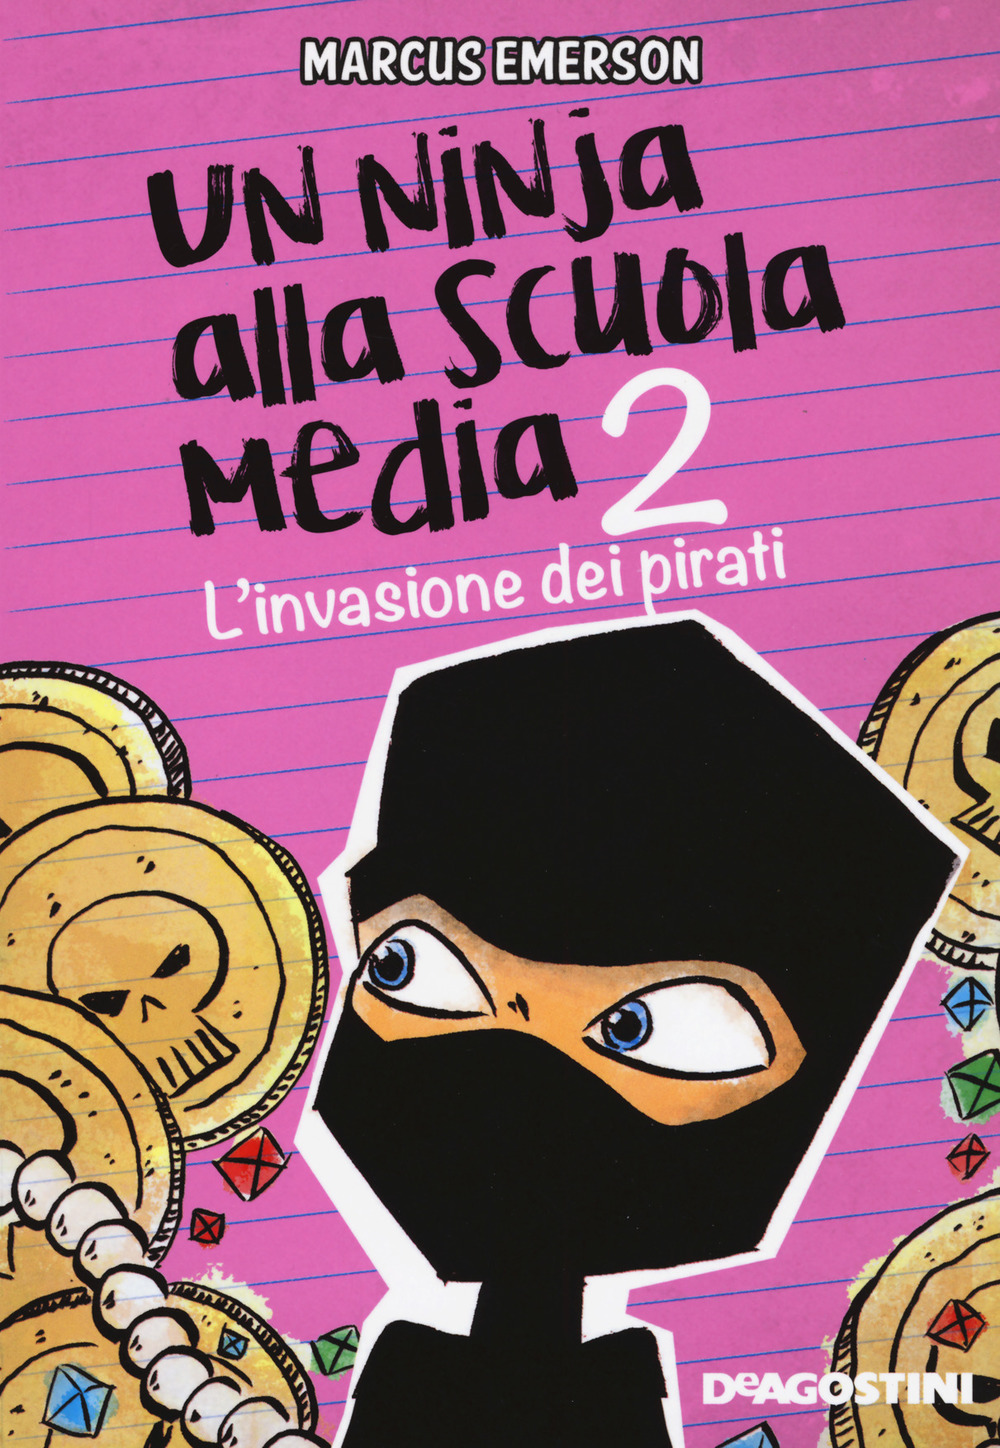 L'invasione dei pirati. Un ninja alla scuola media. Vol. 2